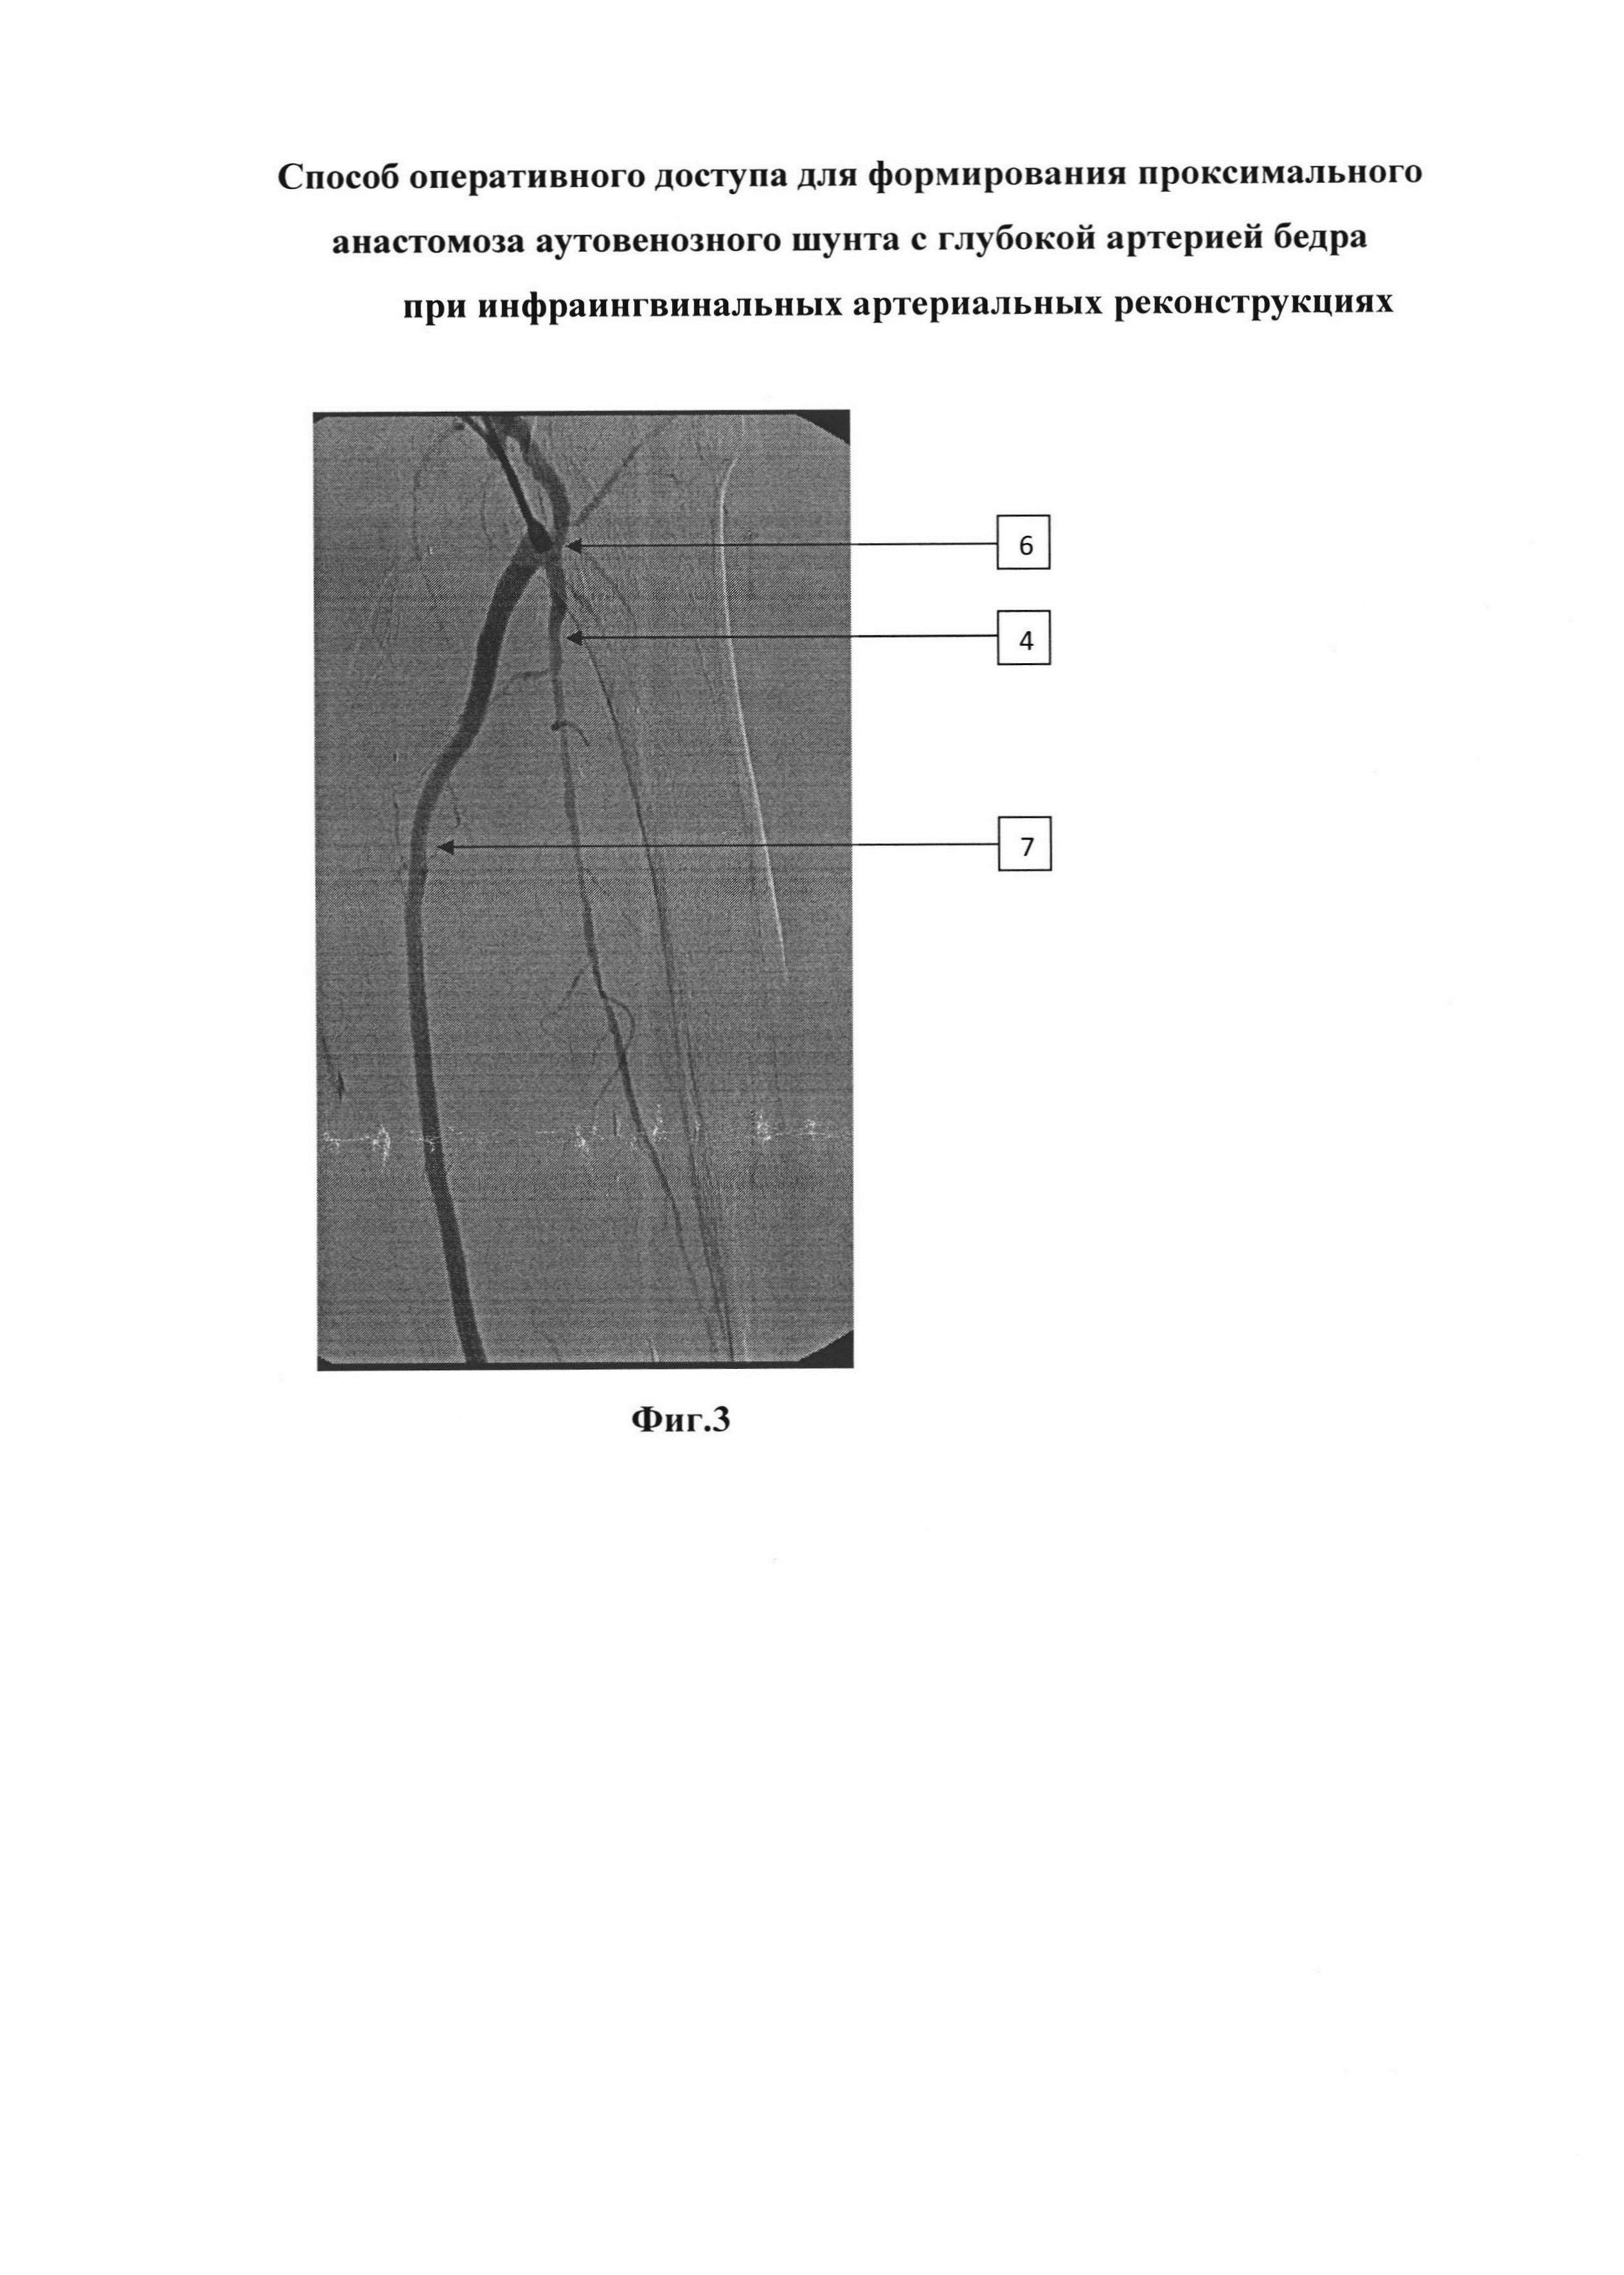 Способ оперативного доступа для формирования проксимального анастомоза аутовенозного шунта с глубокой артерией бедра при инфраингвинальных артериальных реконструкциях